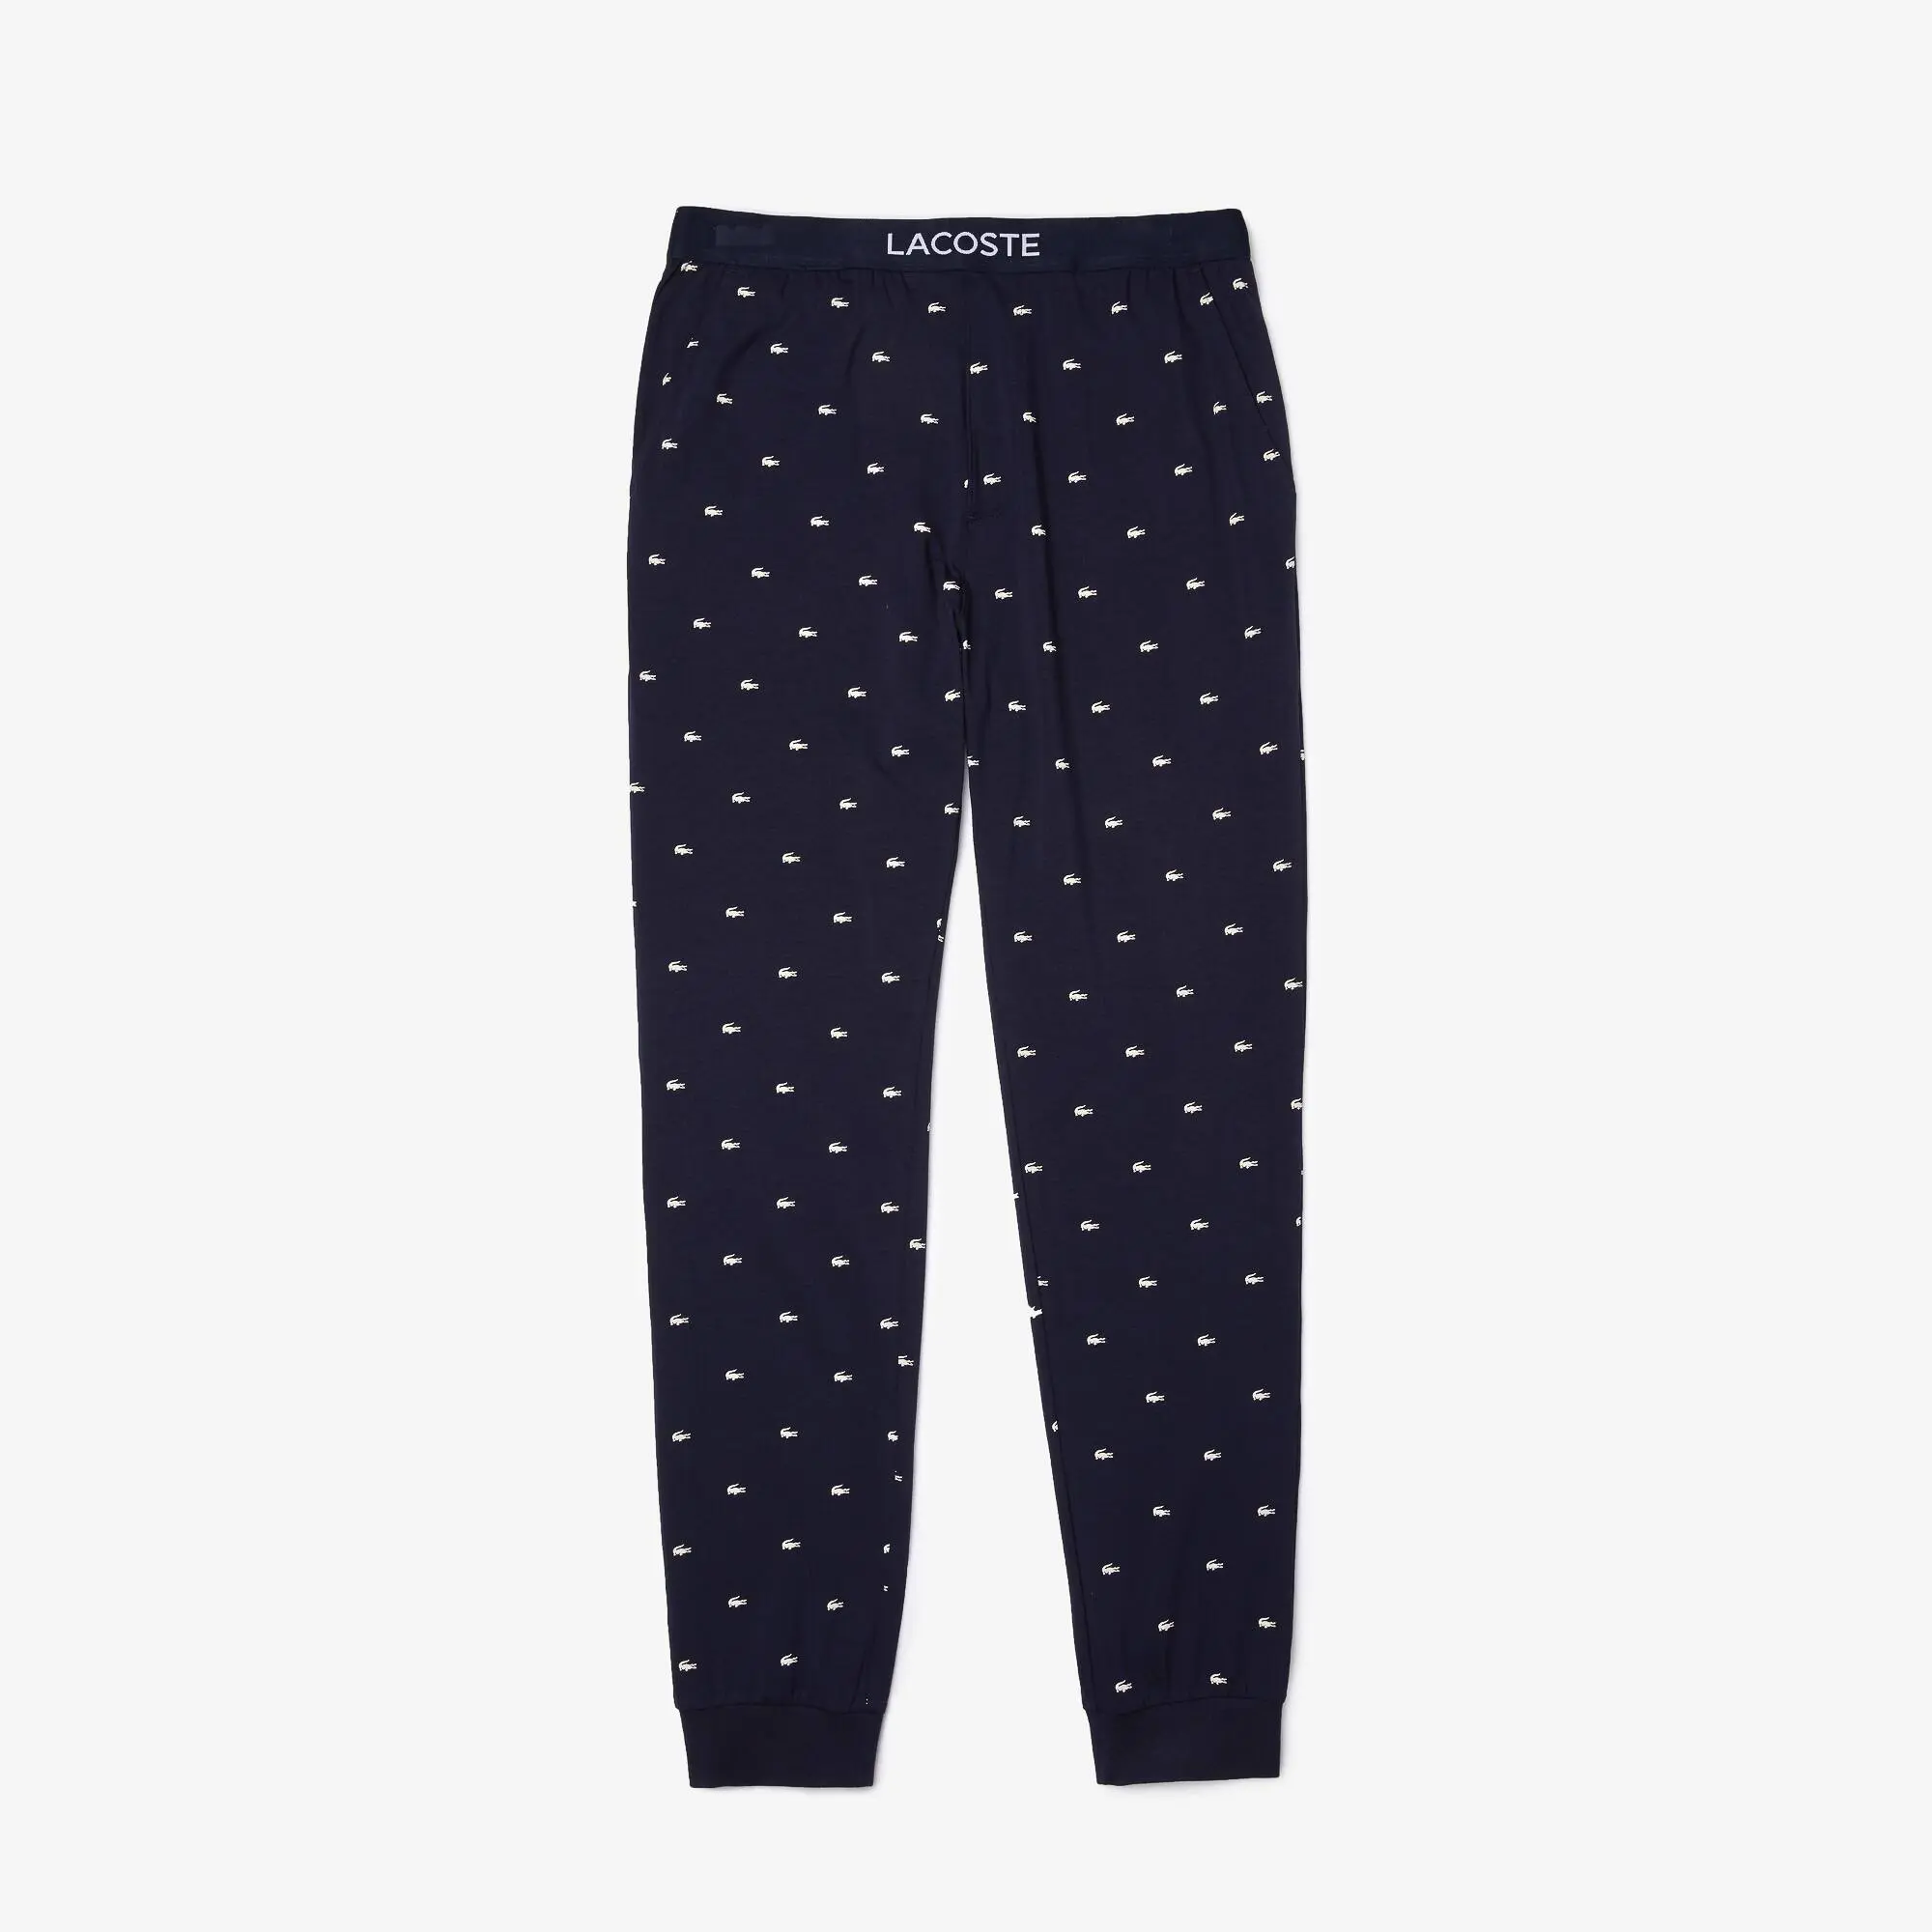 Lacoste Men’s Crocodile Patterned Stretch Cotton Pyjama Pants. 2